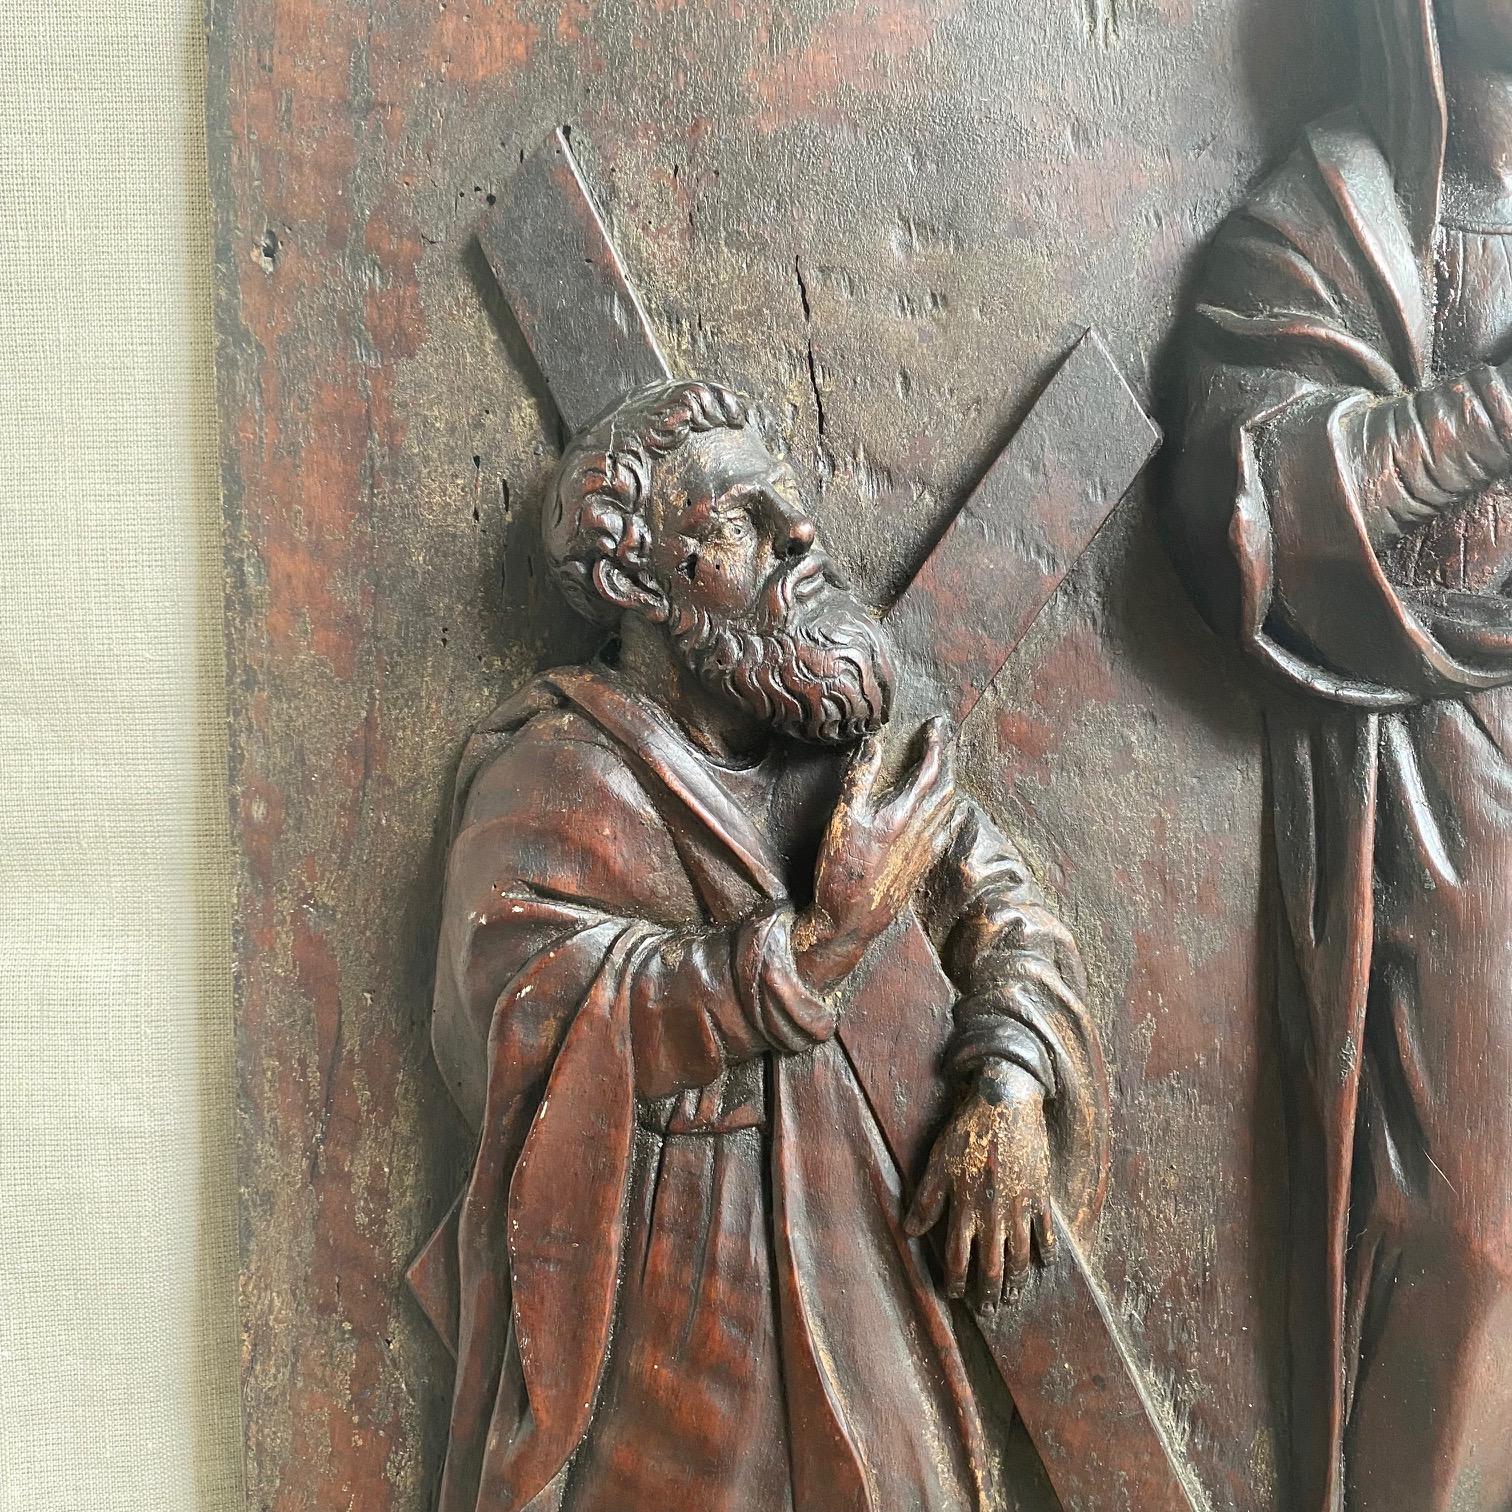 Aus einem einzigen massiven Walnussholzbrett geschnitzt, zeigt diese beeindruckende italienische Flachreliefplakette Maria mit dem Jesuskind, flankiert von zwei Aposteln, von denen einer ein Schwert und der andere ein Kruzifix hält. Die Figuren sind